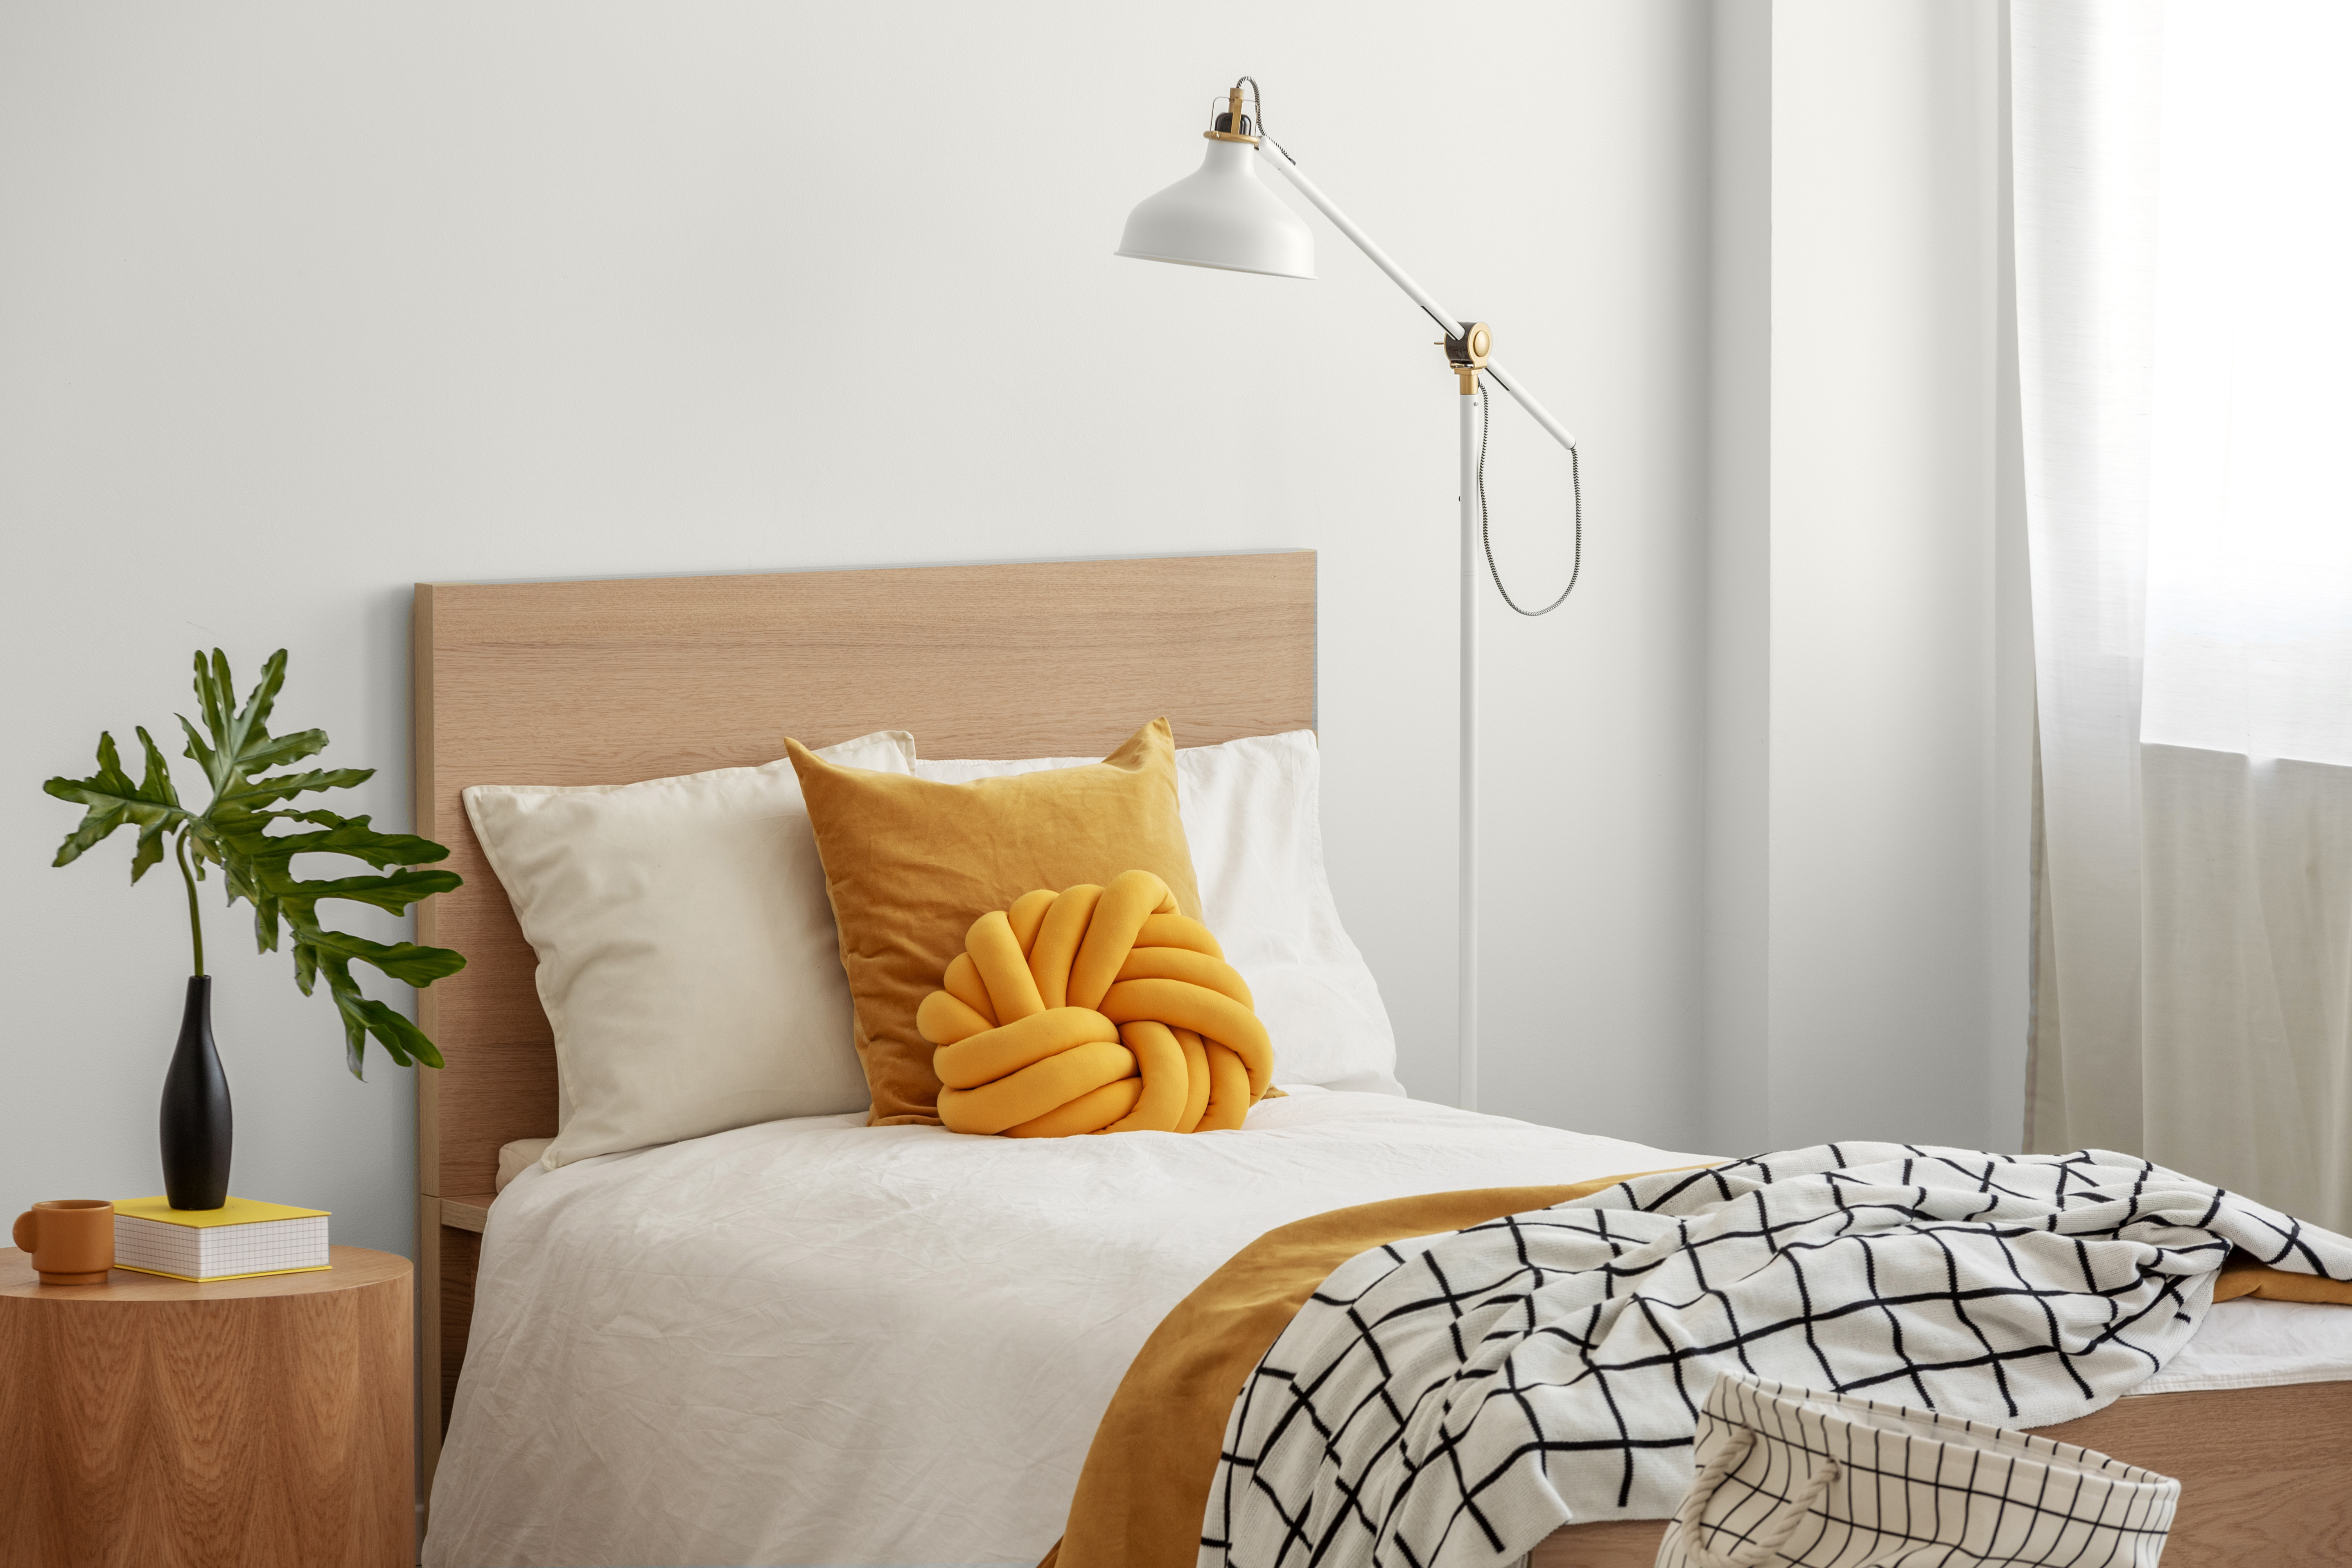 Des coussins jaunes et une couverture confortable sur un lit simple dans une élégante chambre d'hôtel, du feuillage vert dans un vase noir sur une table de chevet en bois.